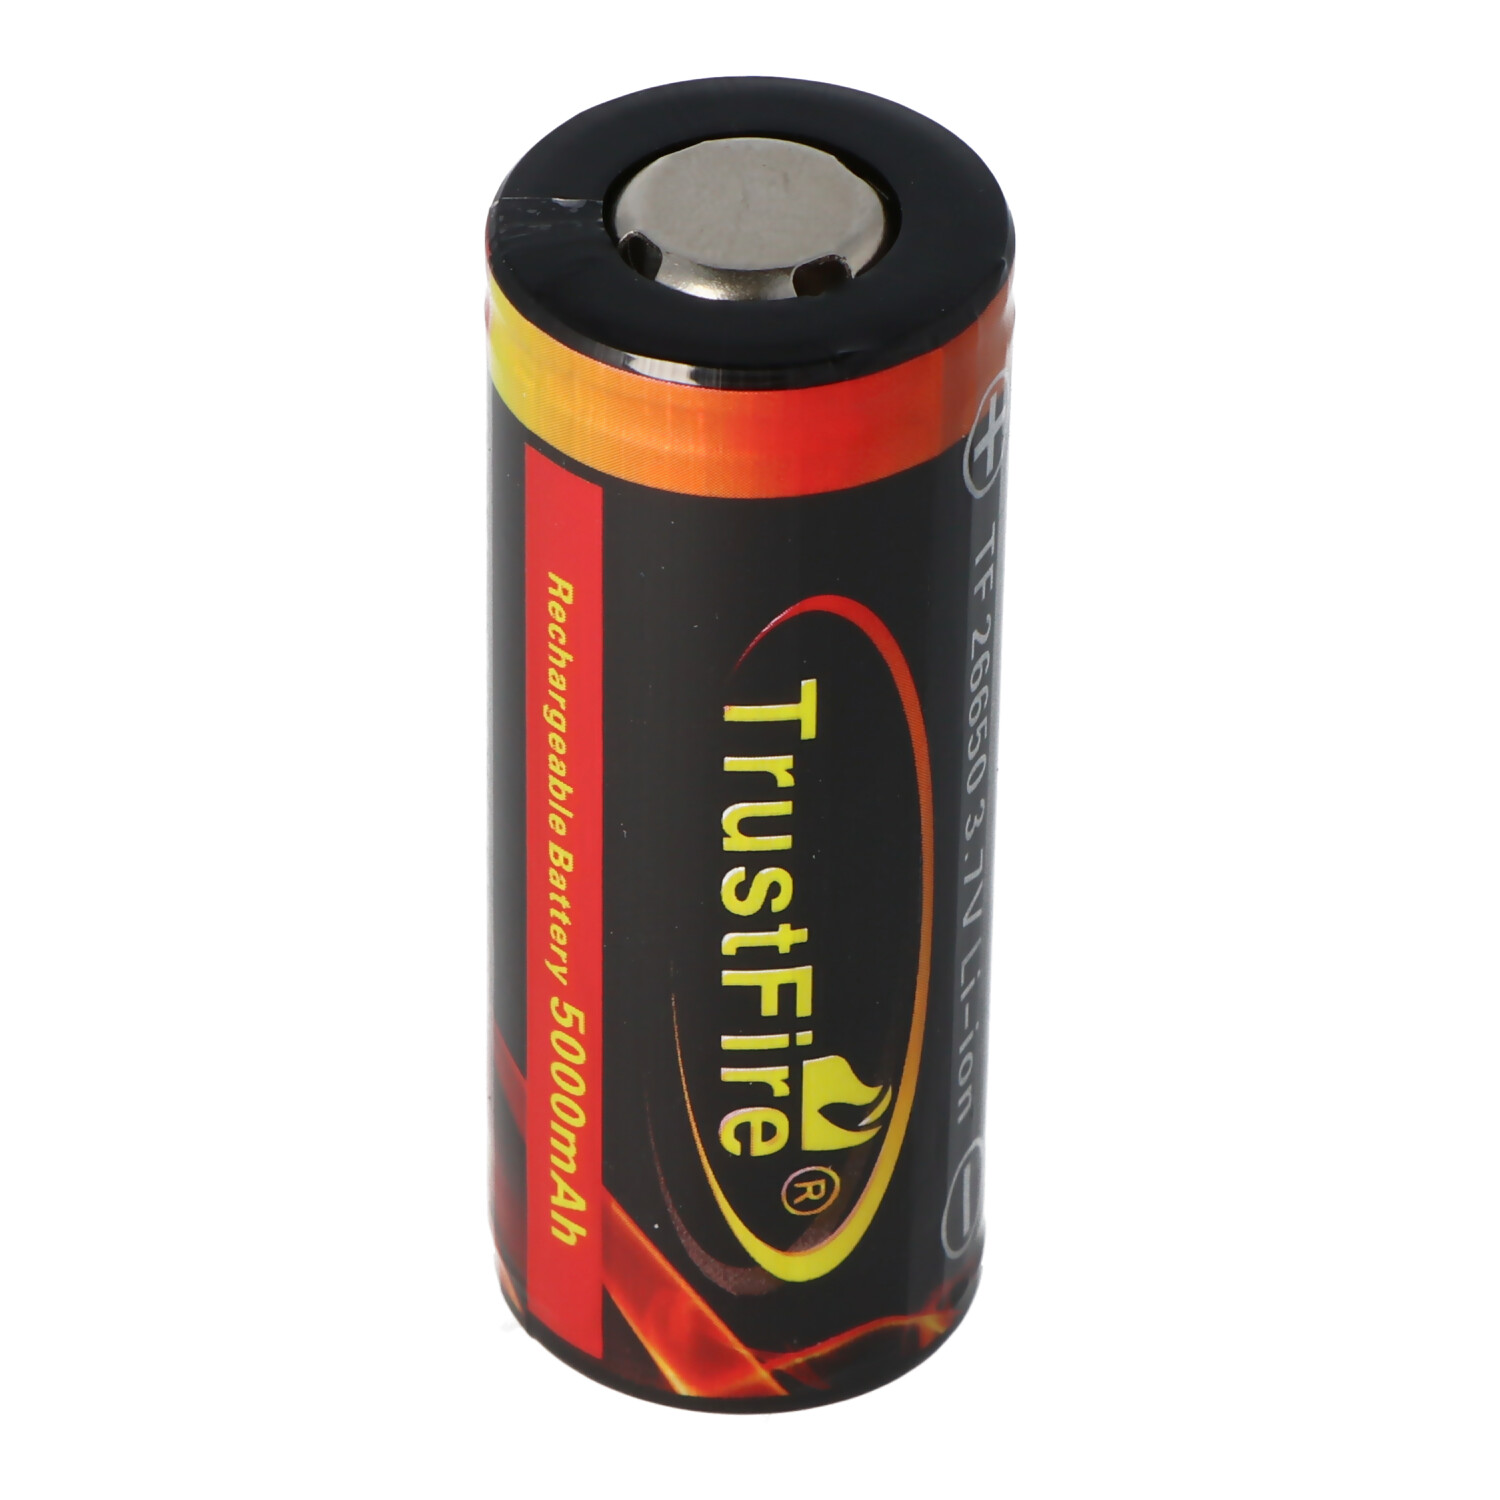 3V 1600mAh Batterie Lithium Jetable Keenstone 12 Piles Lithium CR123A Lot de 12 Haute Performance pour Lampe Torche Appareil numérique Jouets Microphone etc. 